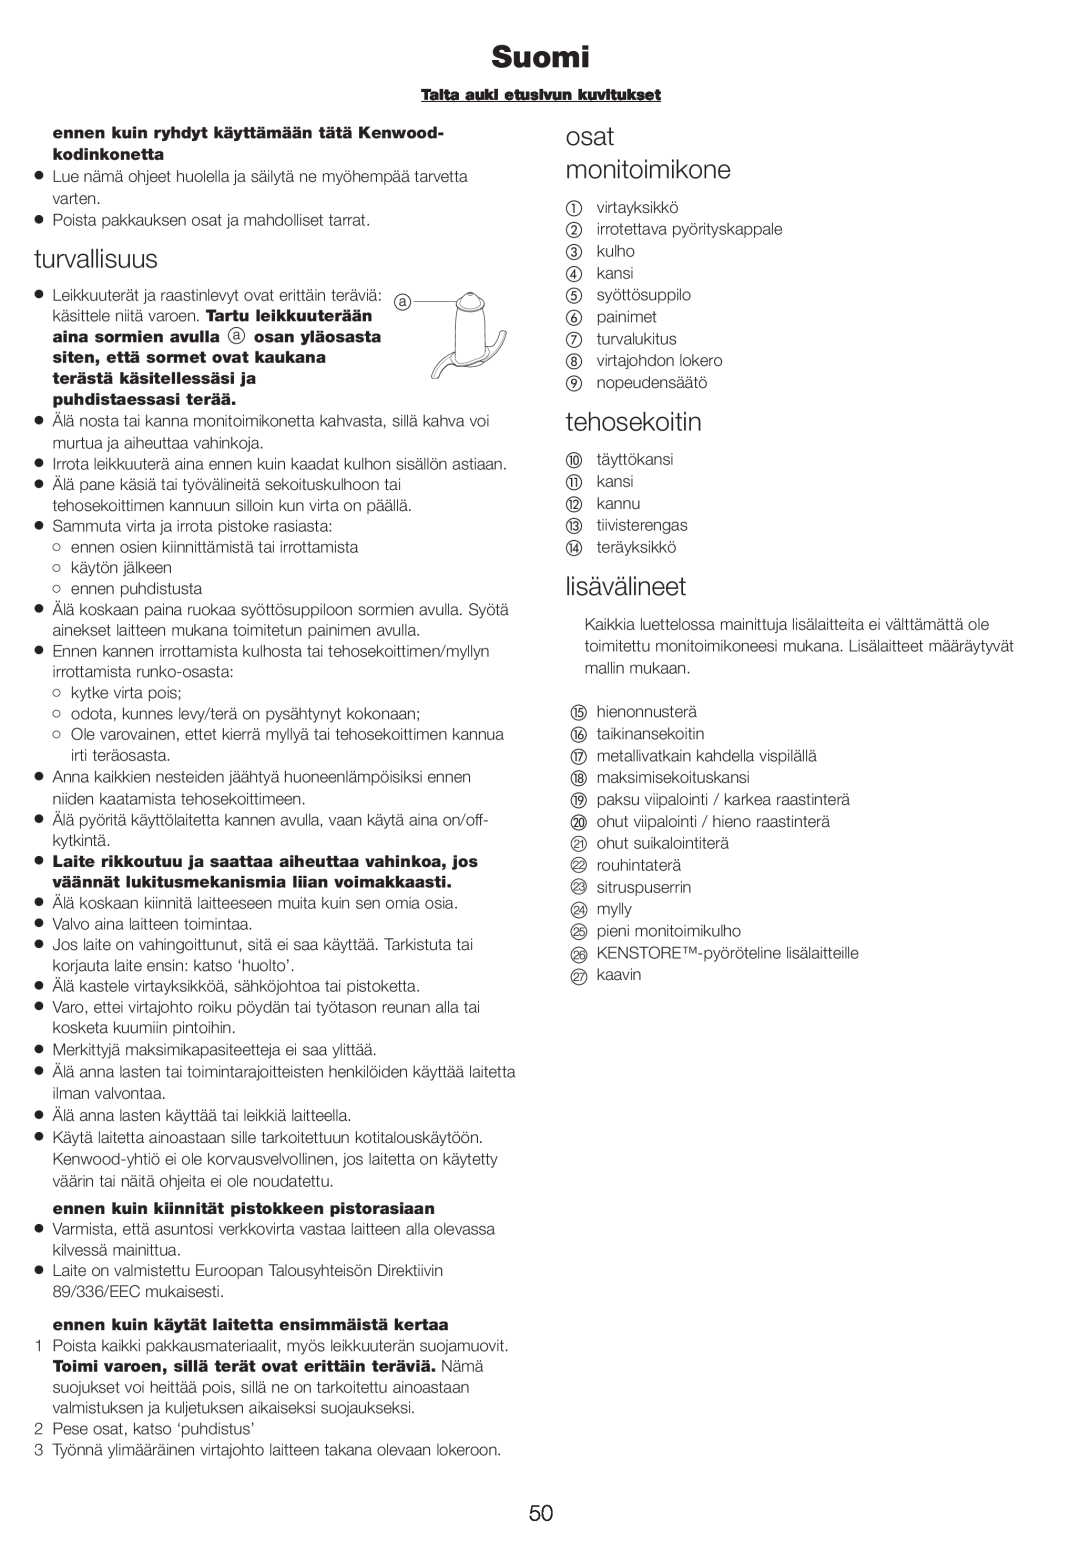 Kenwood FP710, FP720 manual Suomi, turvallisuus, osat monitoimikone, tehosekoitin, lisävälineet 